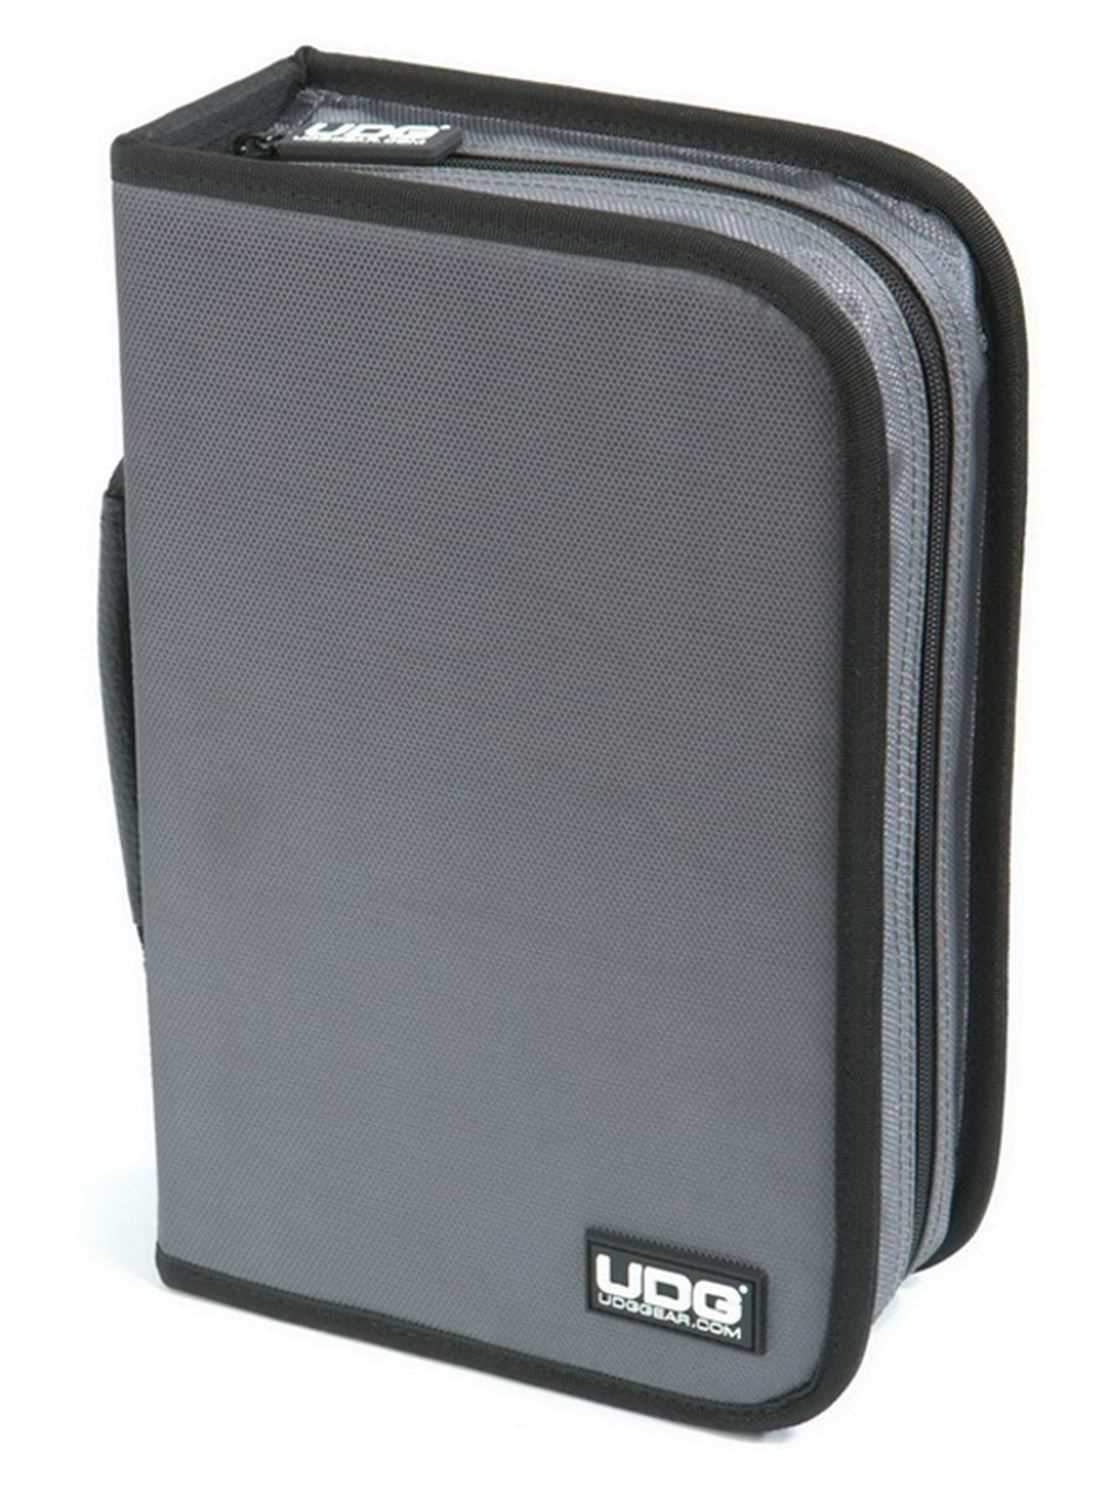 UDG U9977SGOR Pro Dj Cd/Dvd Wallet (100Cd) Gry-Org - PSSL ProSound and Stage Lighting